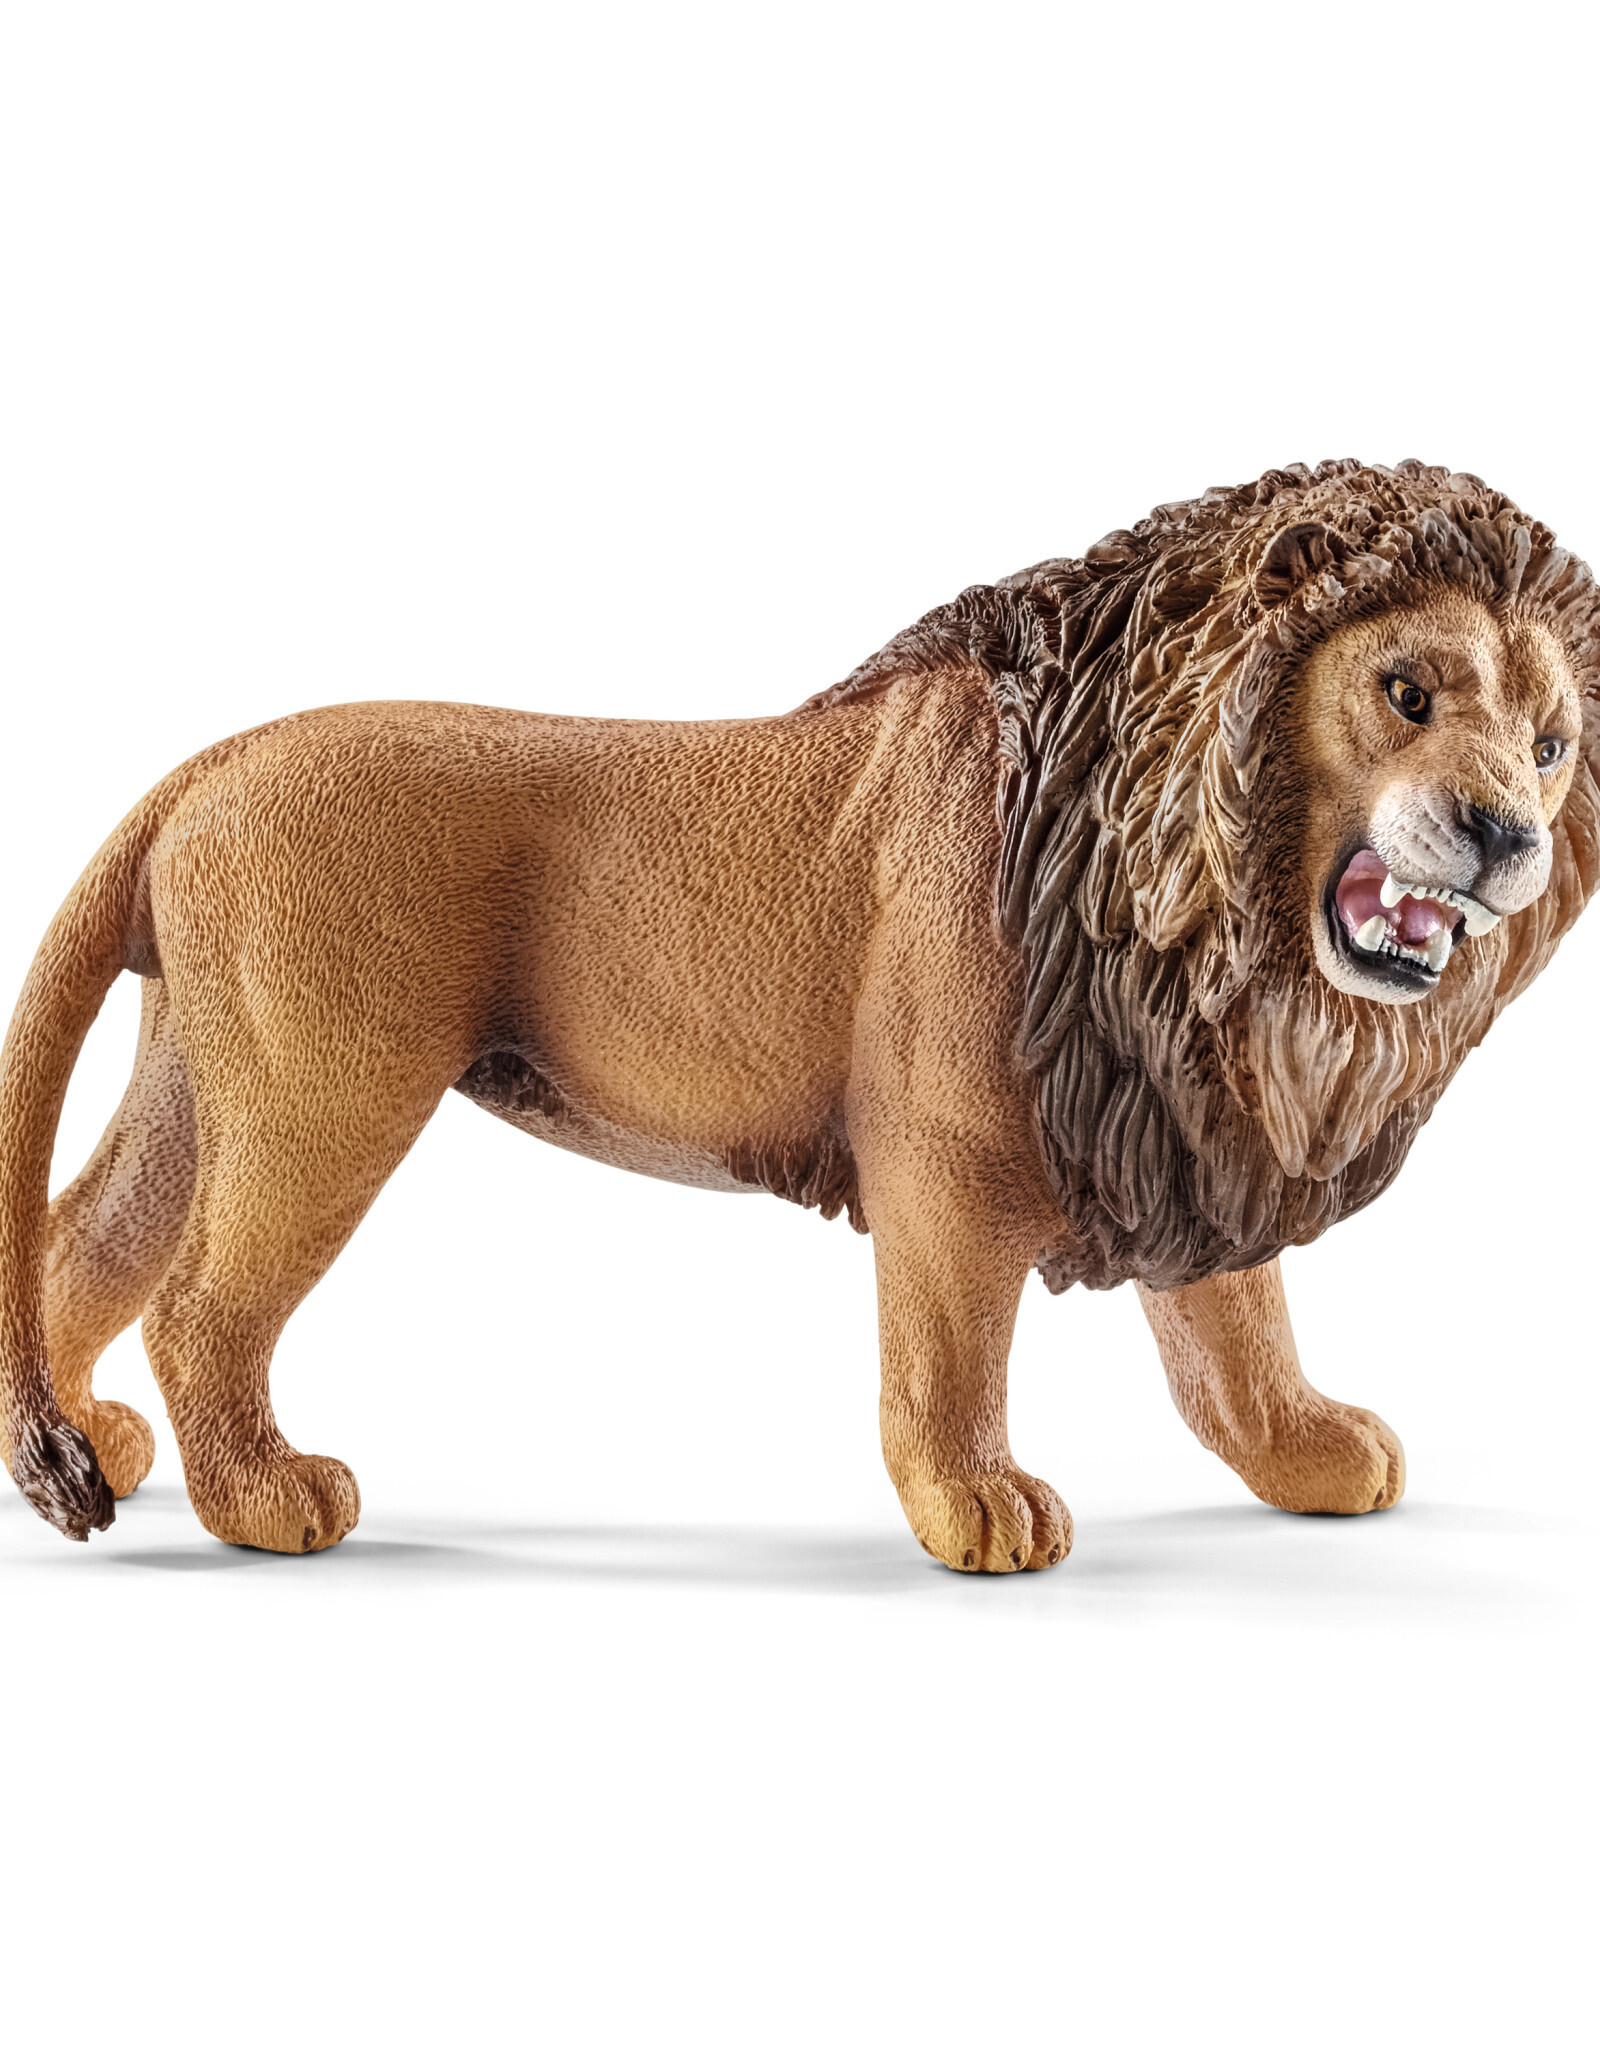 SCHLEICH Lion, roaring